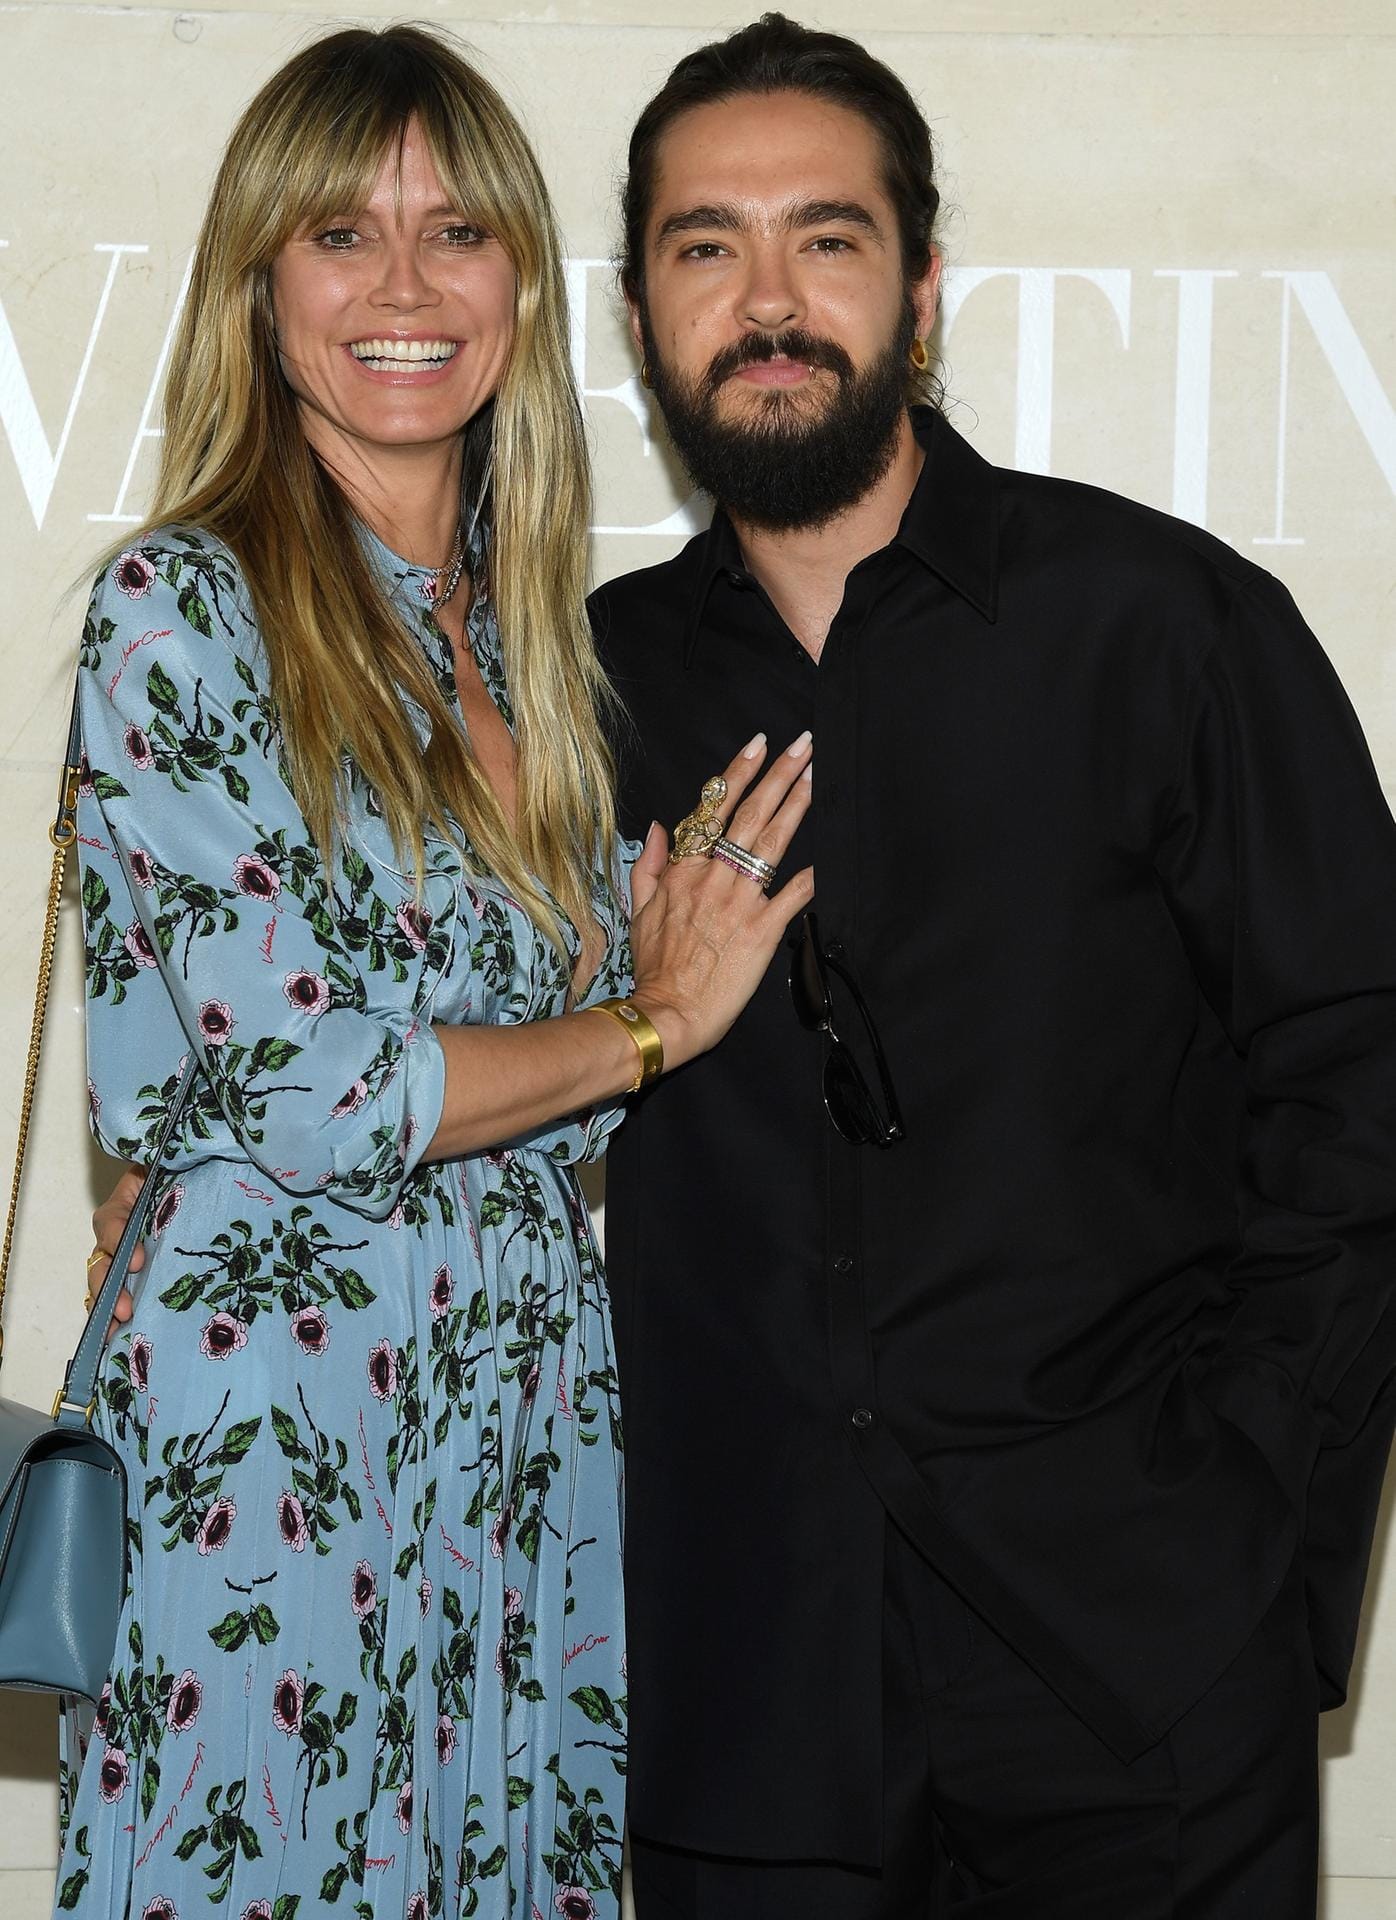 Juli 2019: In Paris waren sie auch auf der Fashionshow, hier von Valentino.